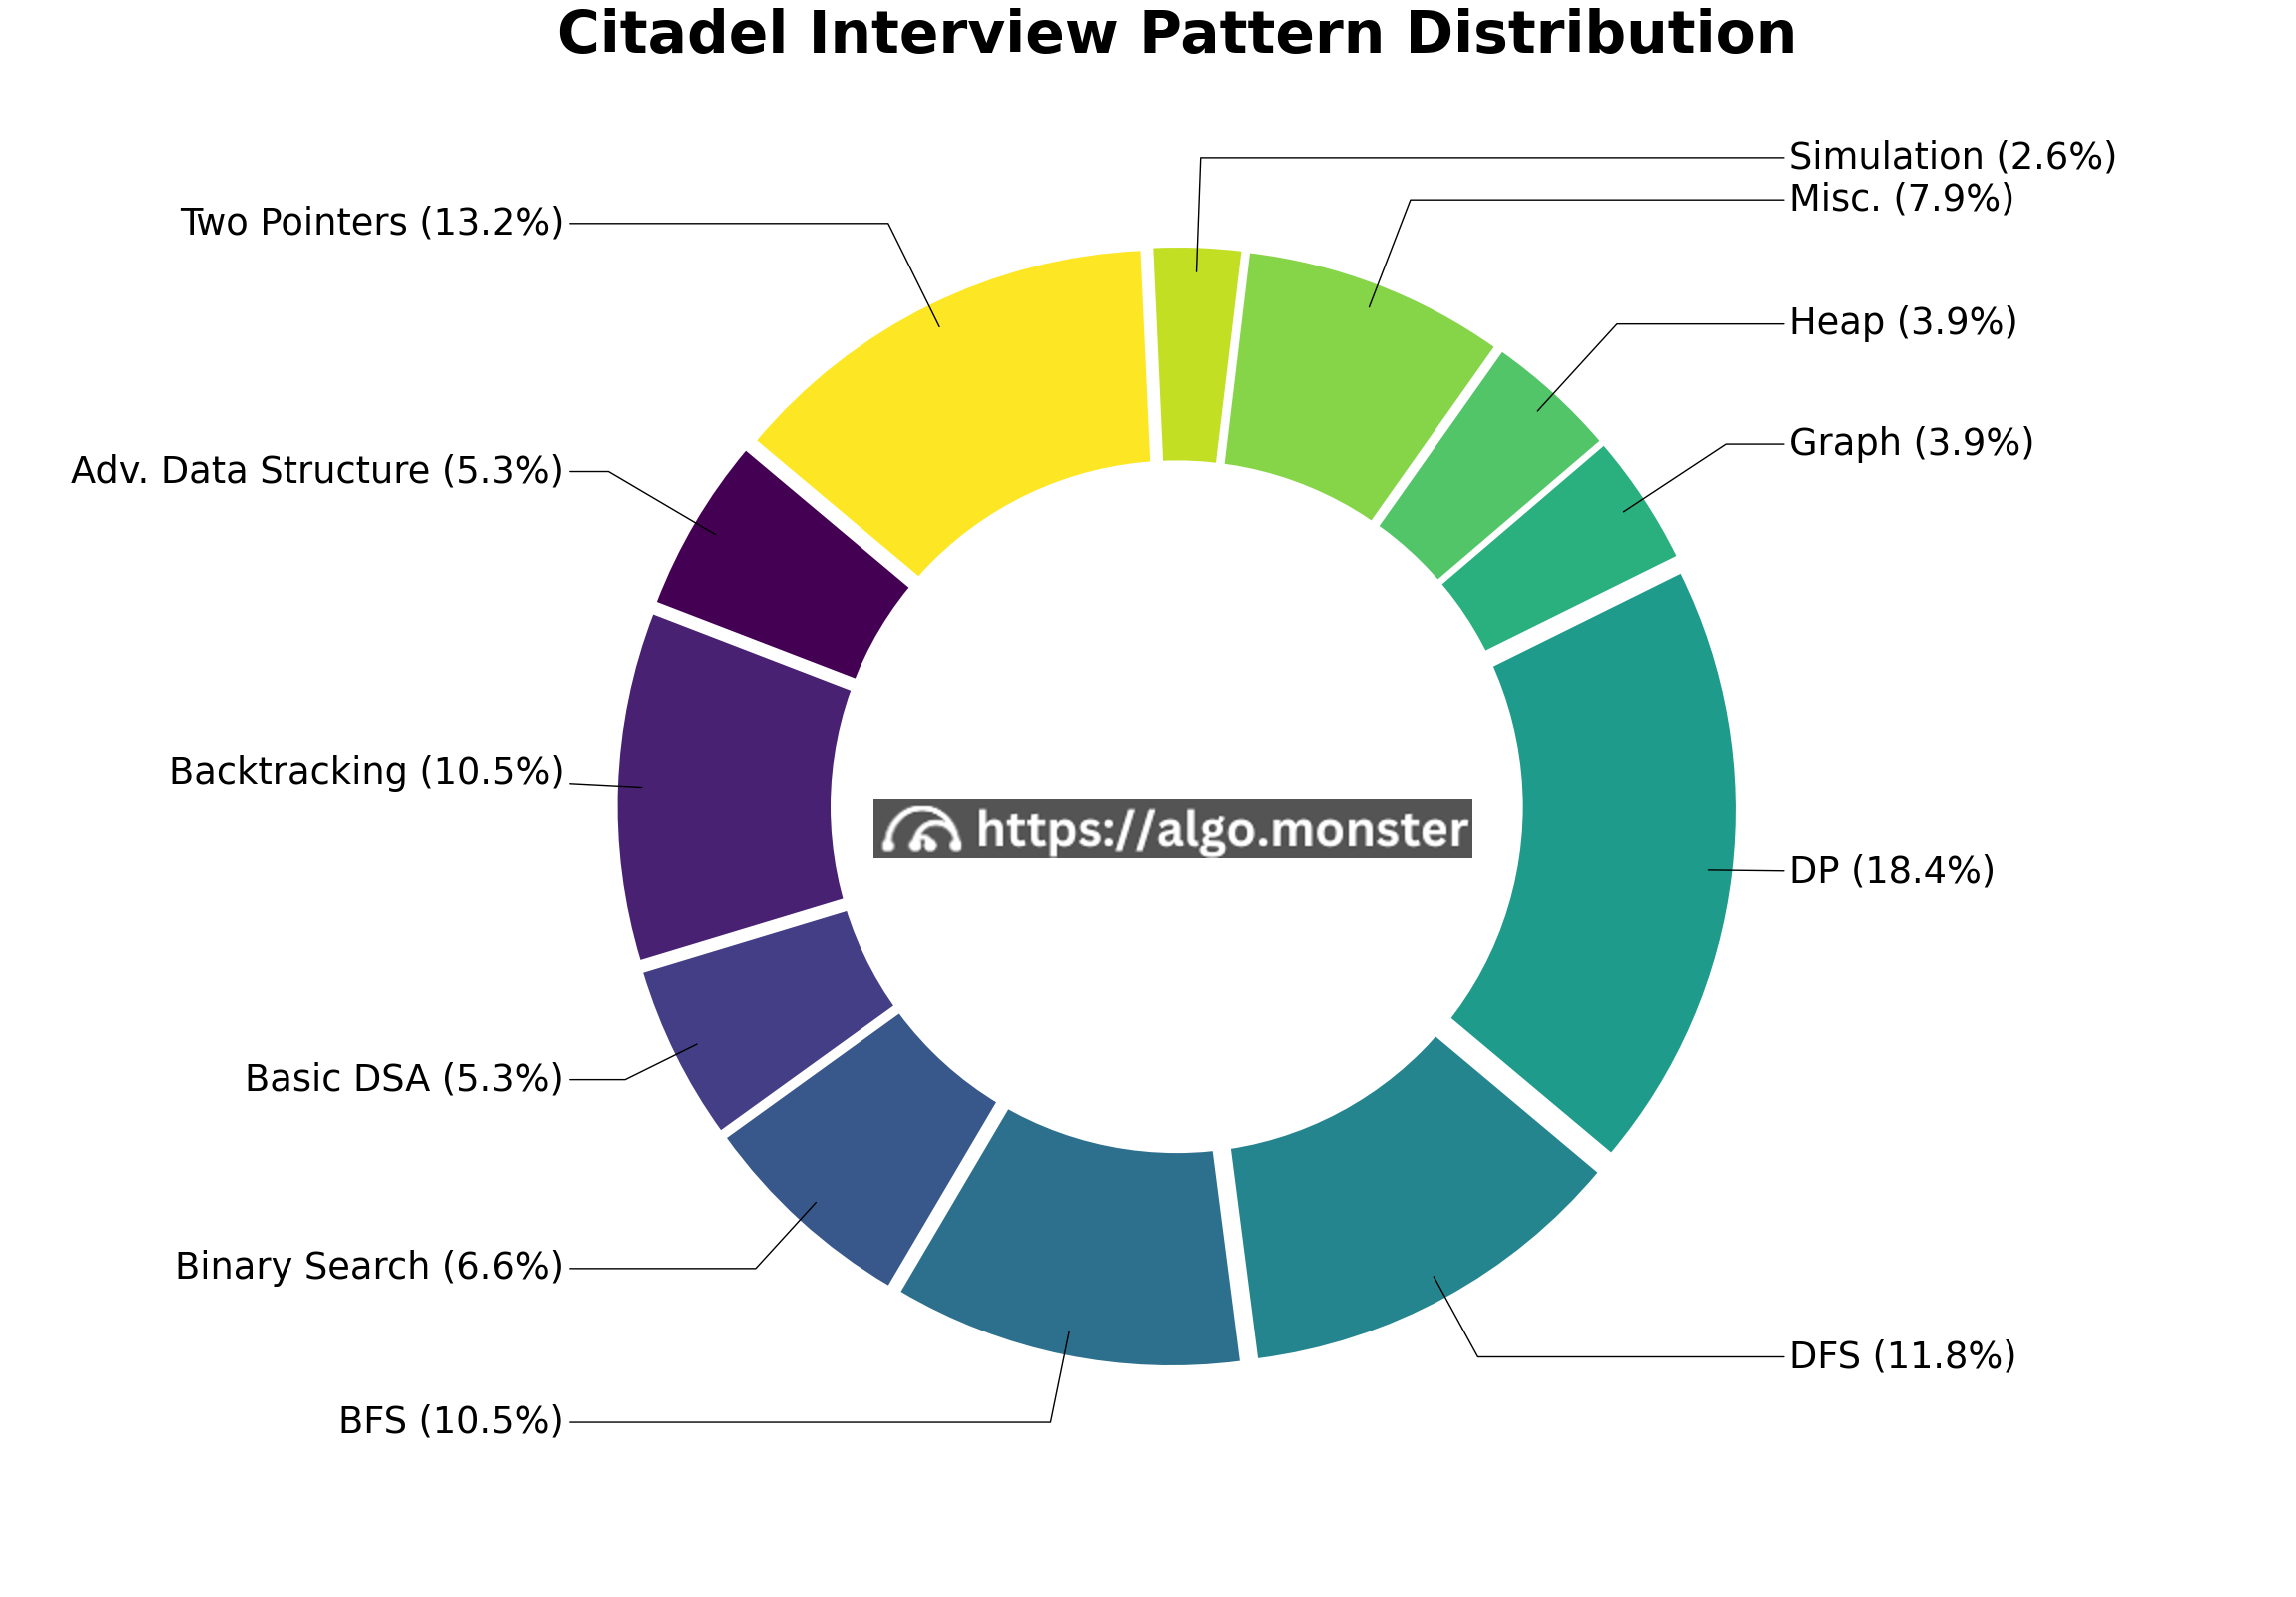 Citadel interview questions breakdown